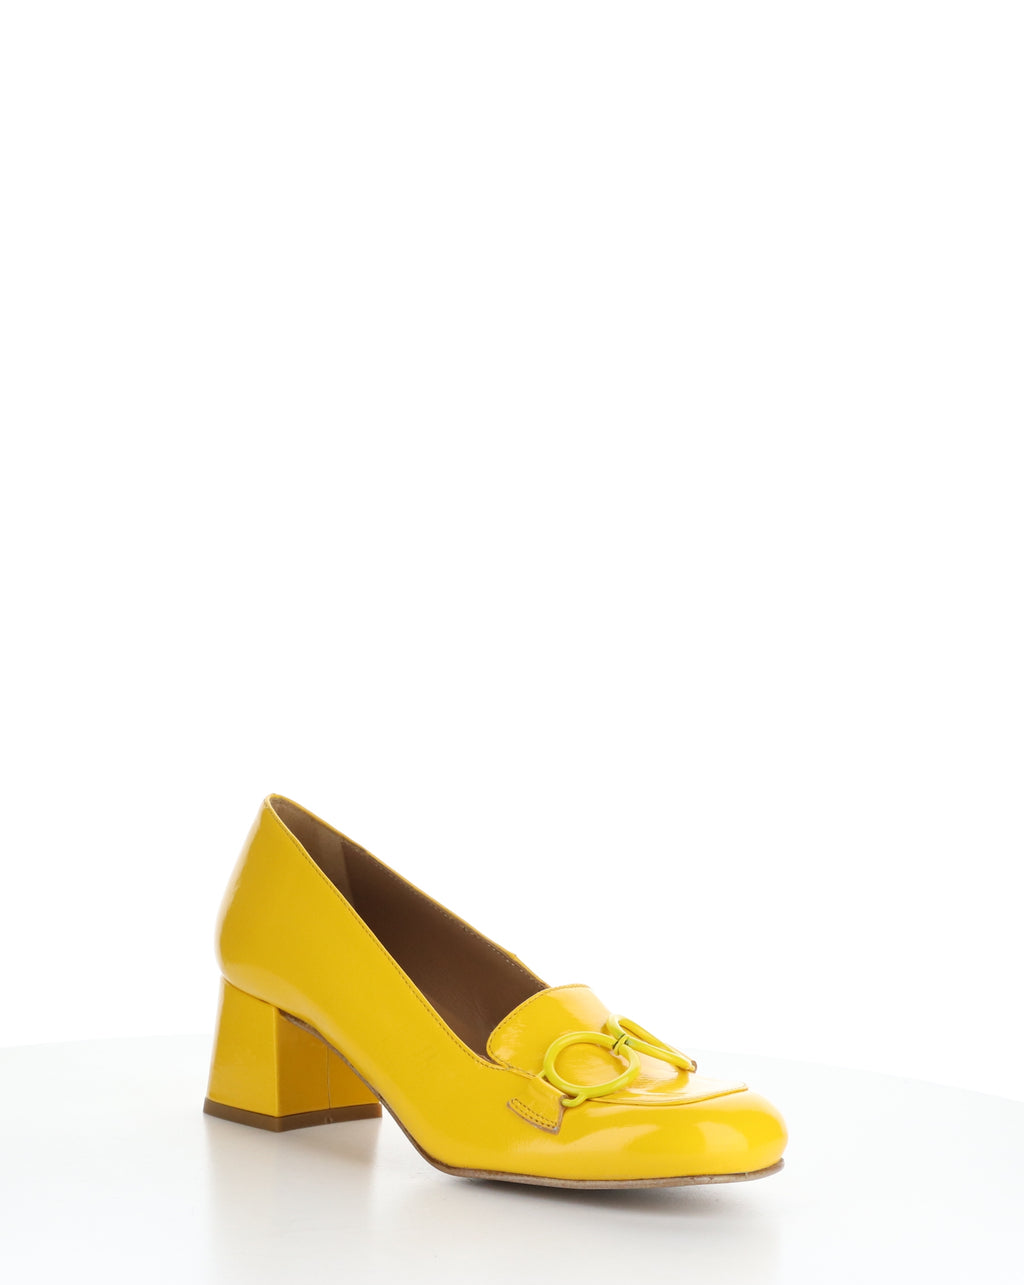 Fly London "Sivi" Yellow patent dress shoe